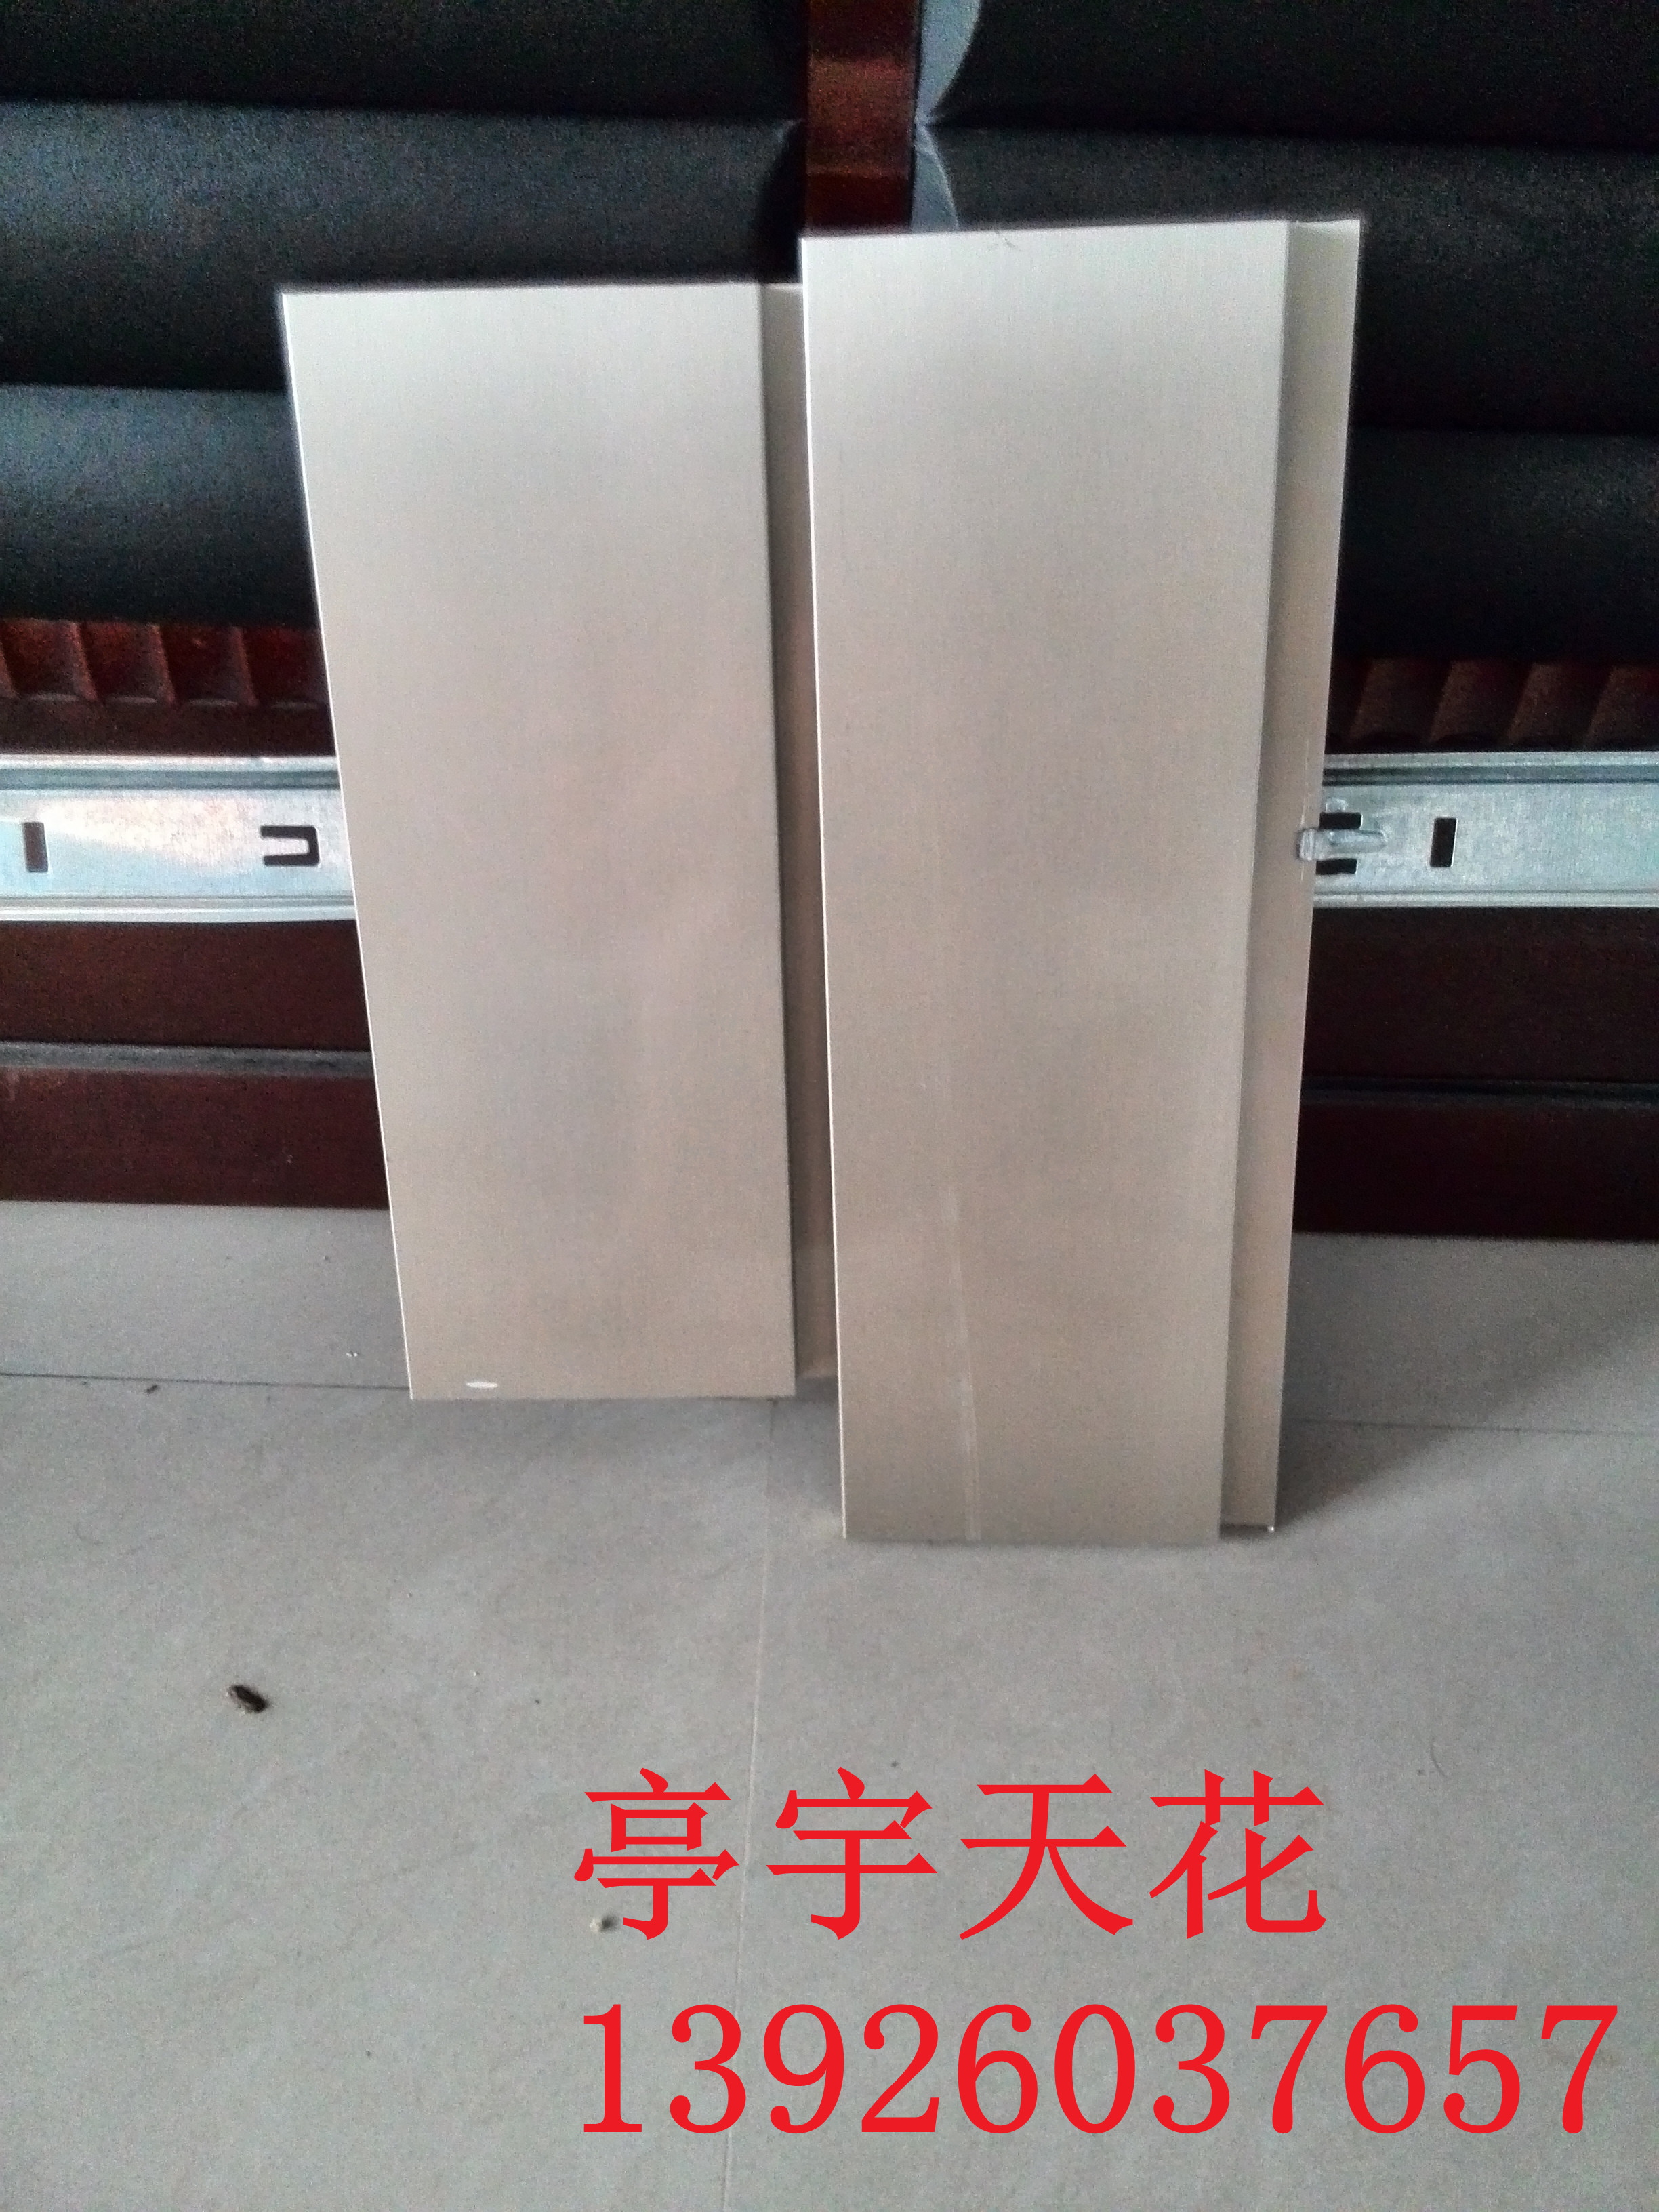 供应用于装修的防风铝条扣吊顶、铝扣板价格 北京铝条扣供应